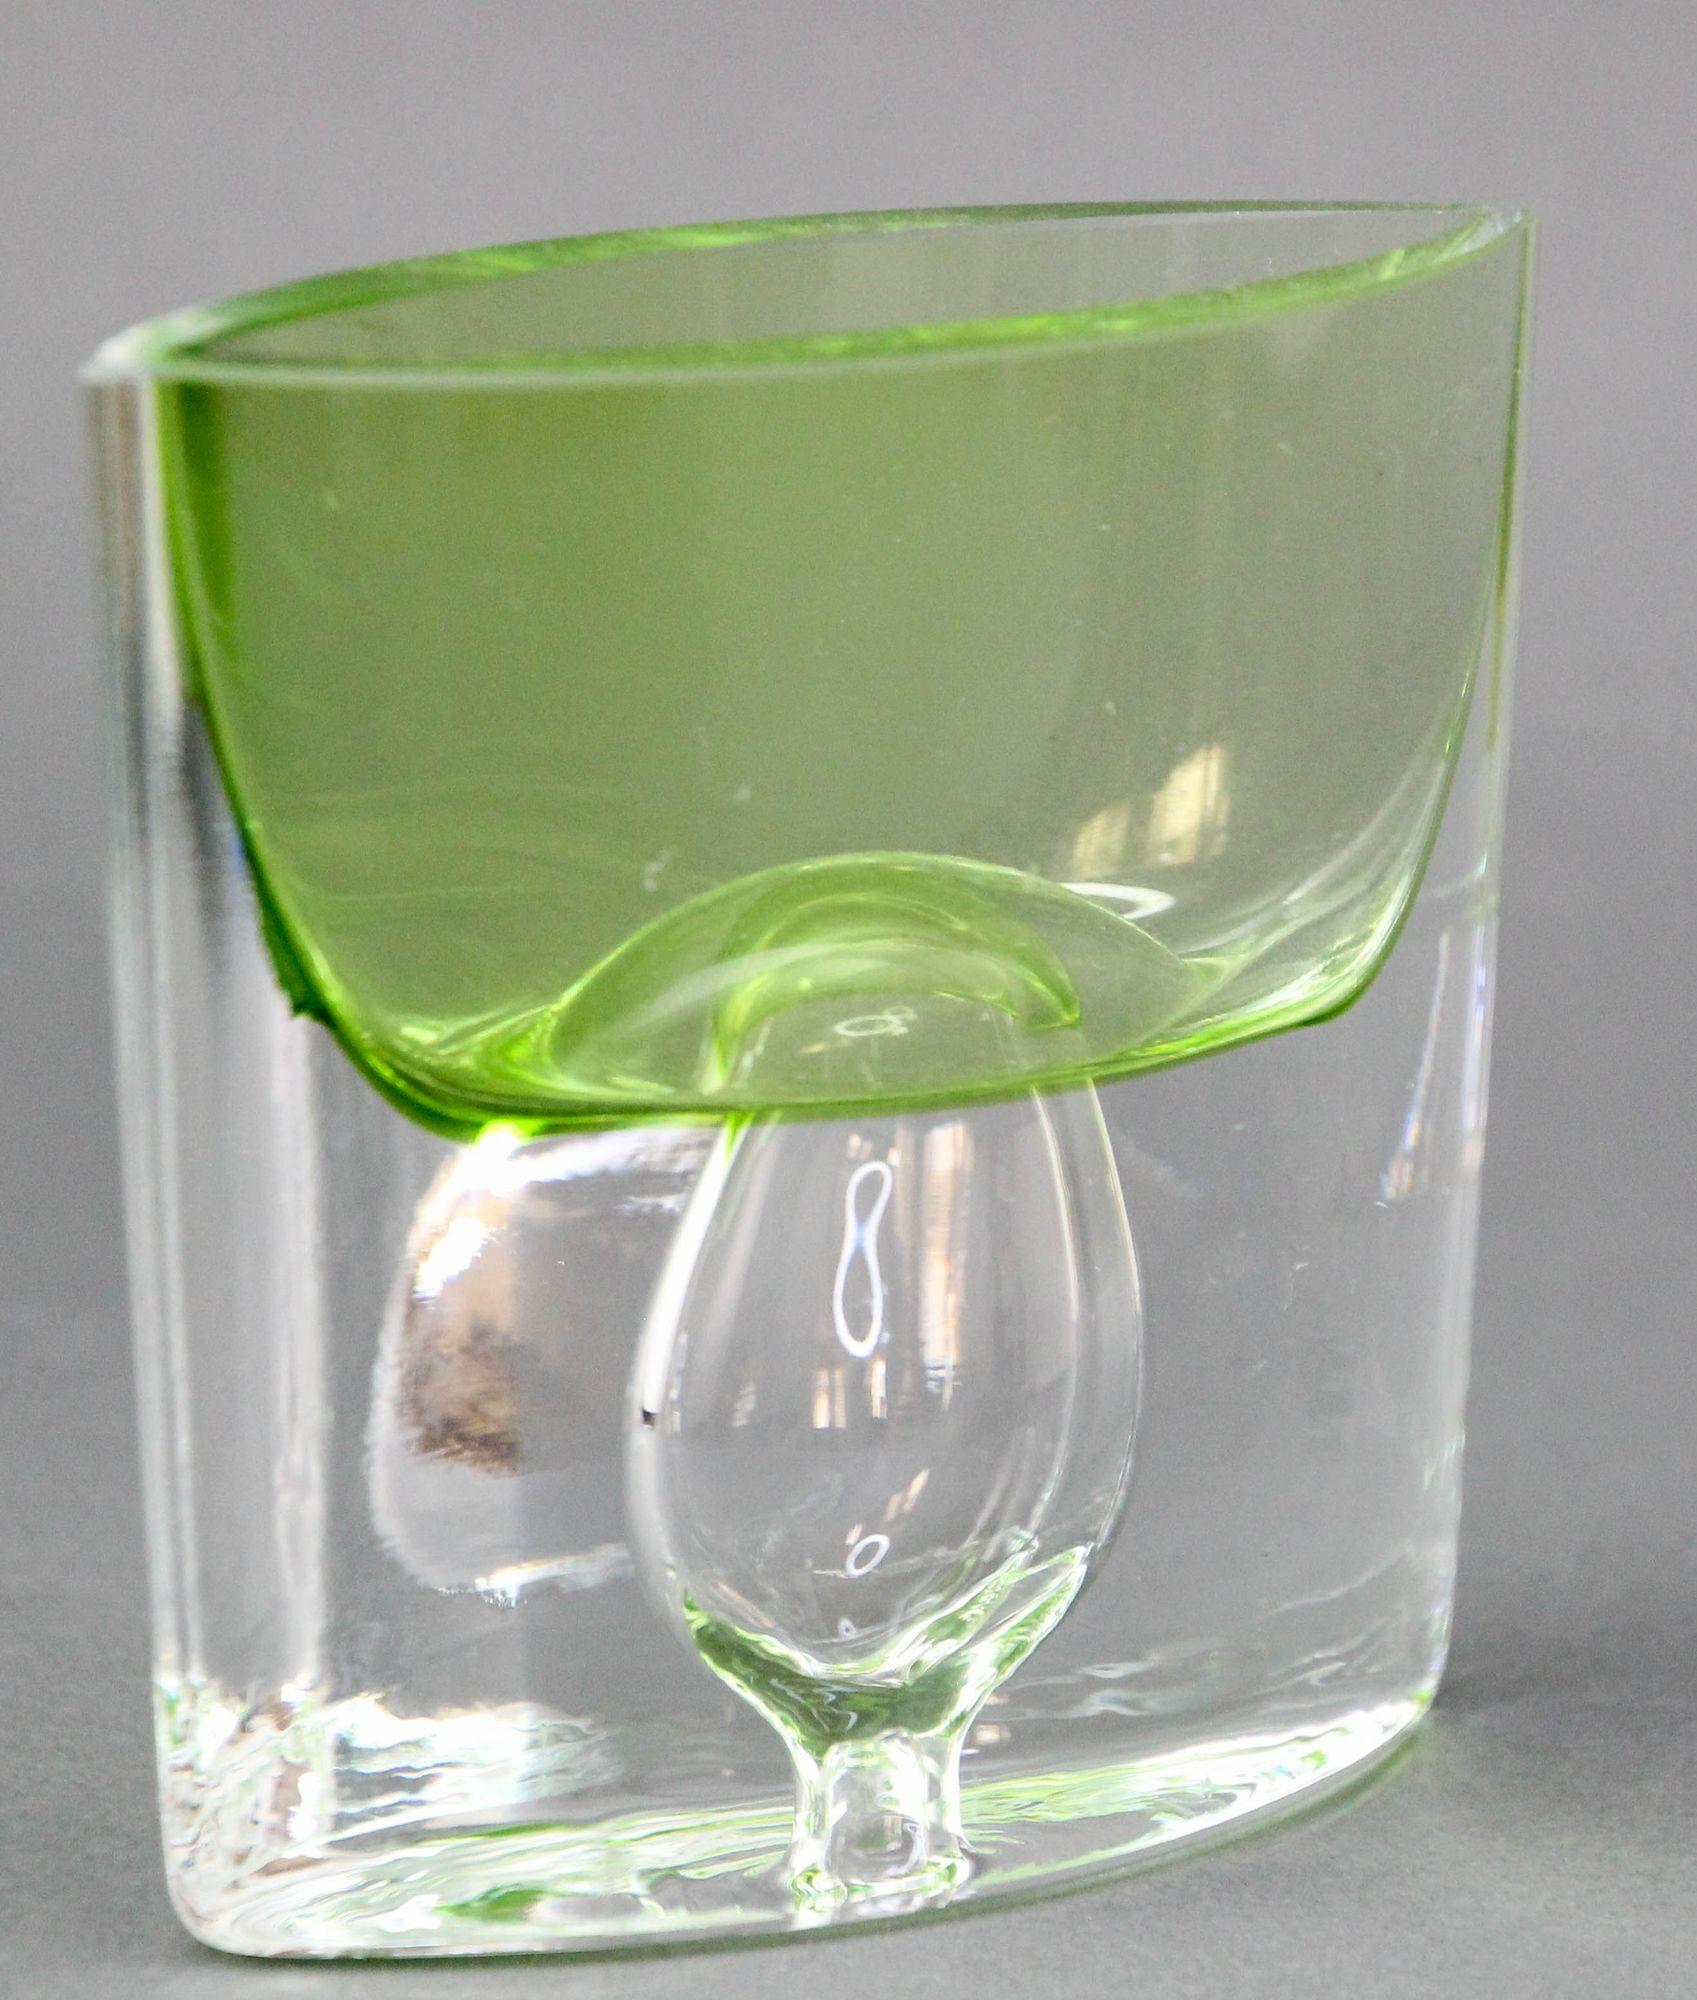 Polish Krosno Poland Vintage Green Art Glass Bud Vase or Candle Holder For Sale